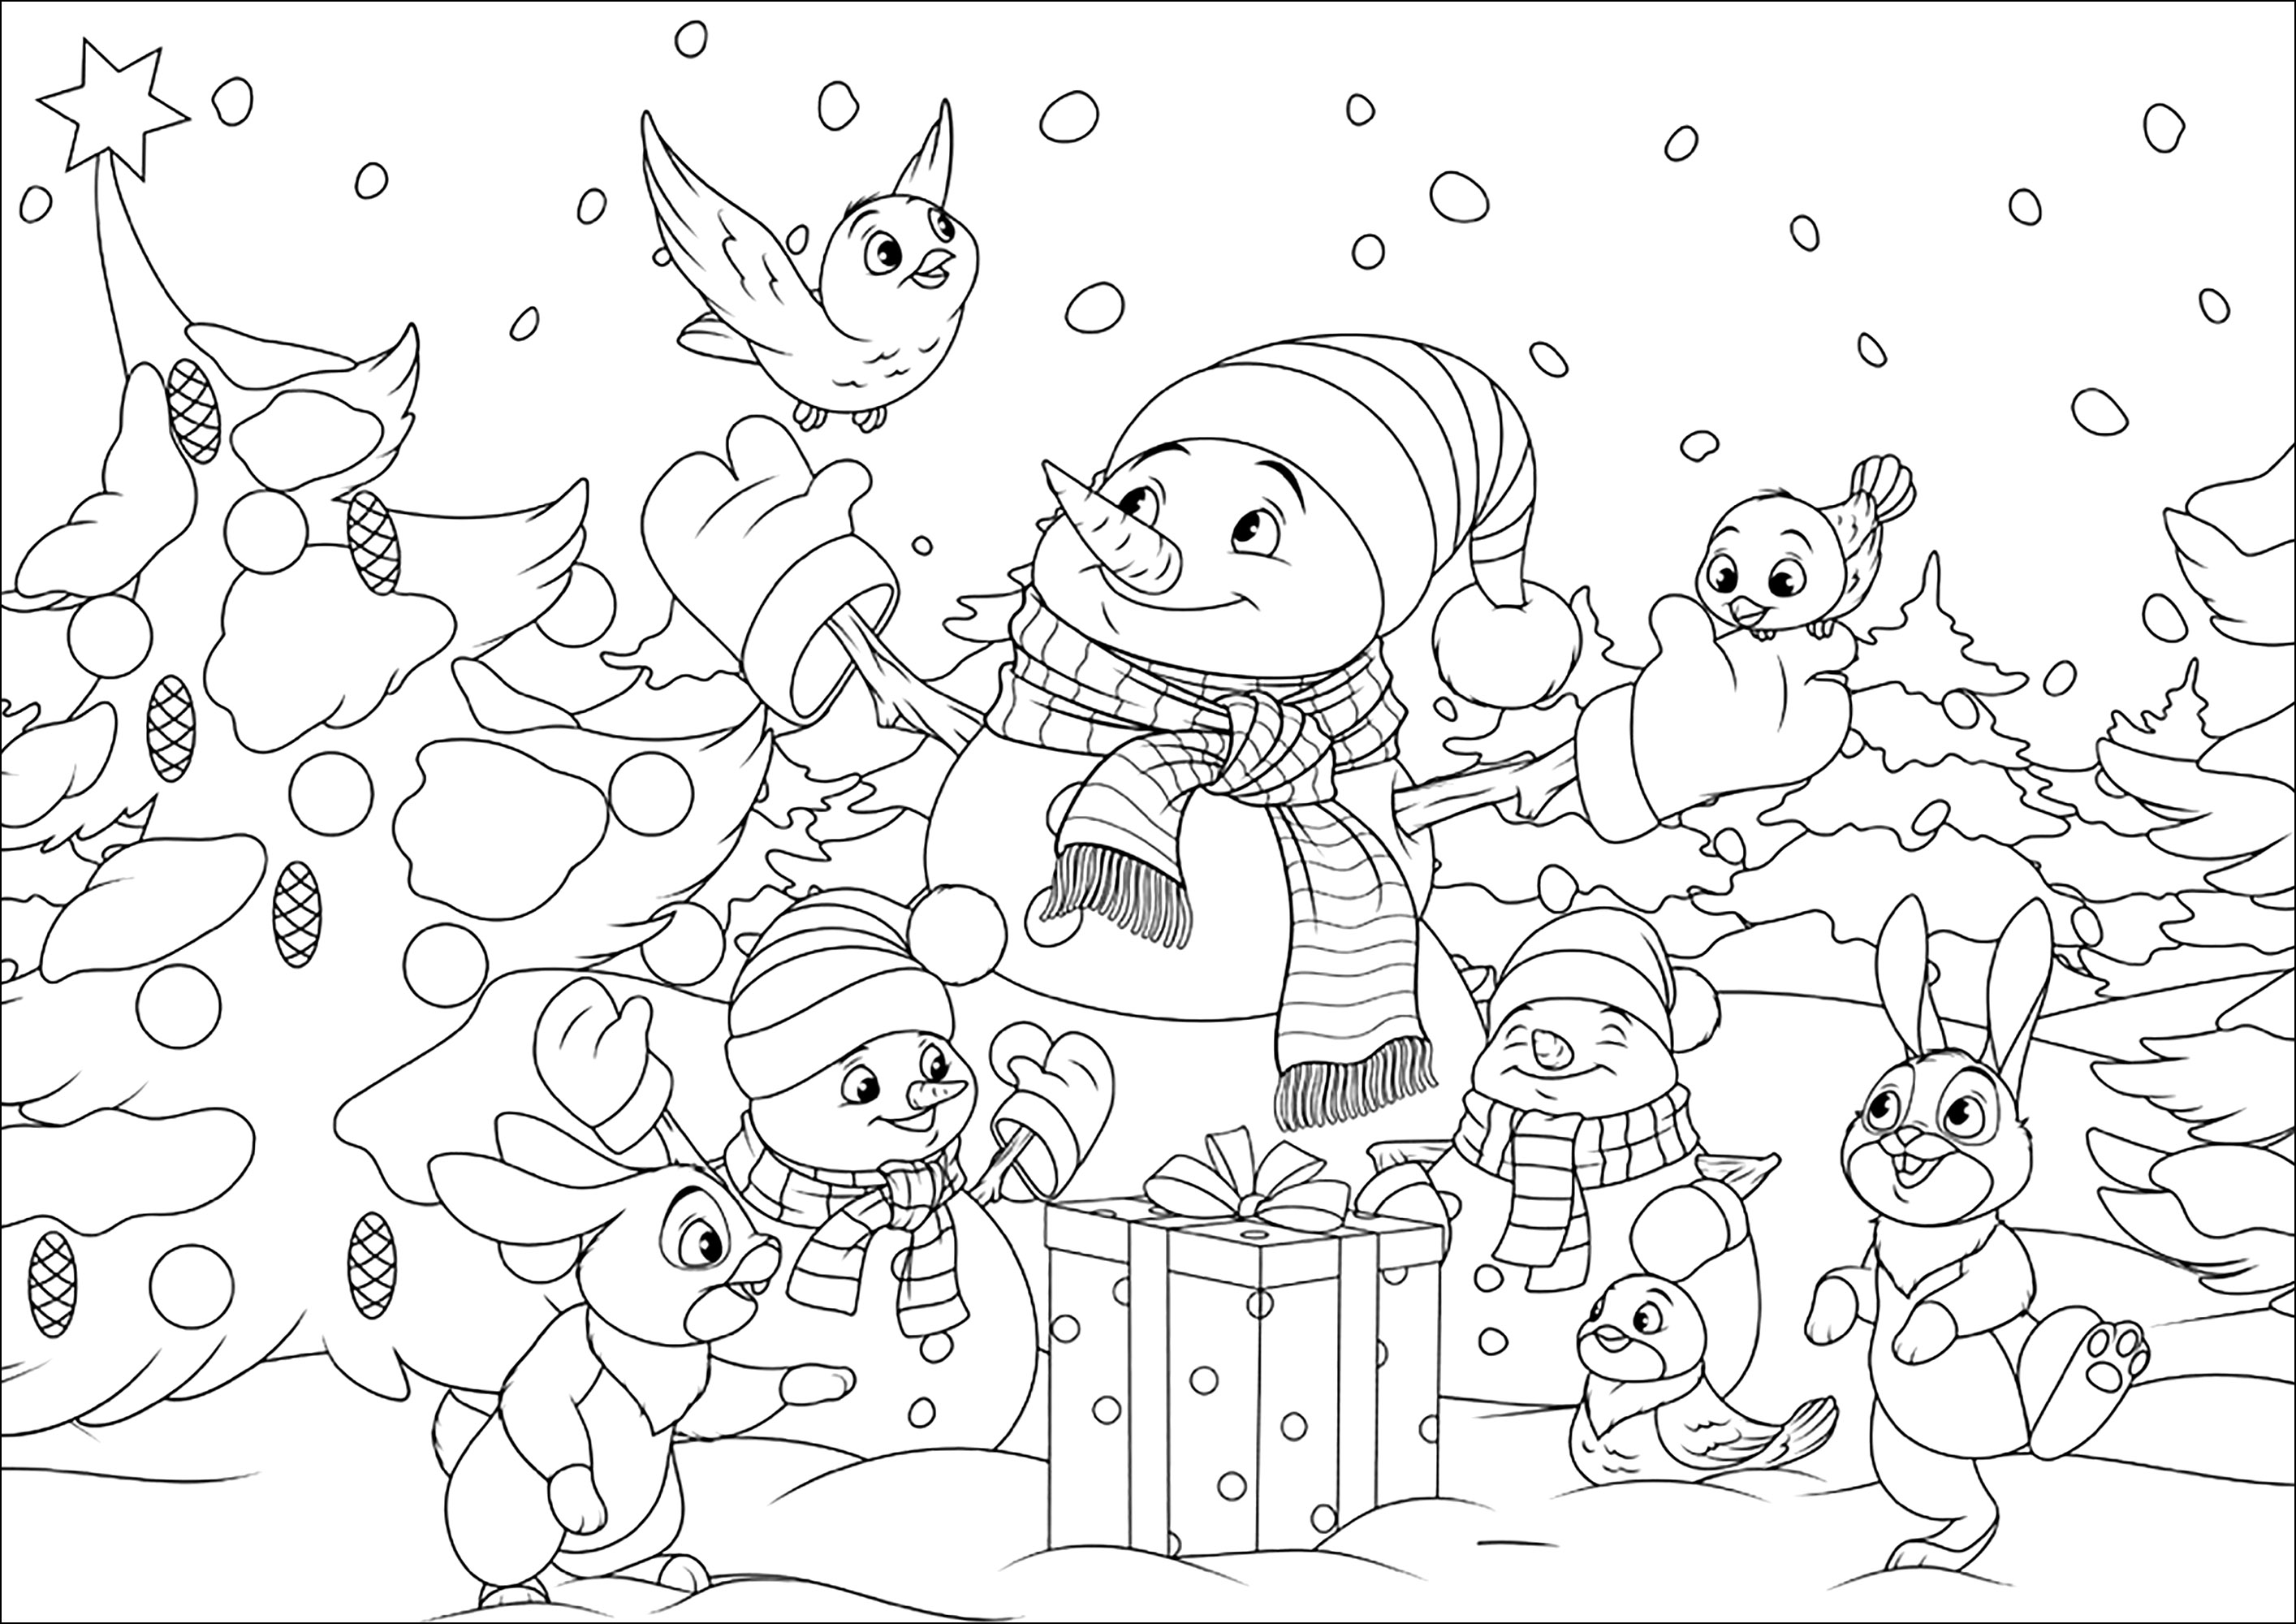 Bonhommes de neige et leurs amis de la forêt. Coloriez ces jolis bonhommes de neige et leurs amis lapins et oiseaux, dans un paysage enneigé de Noël